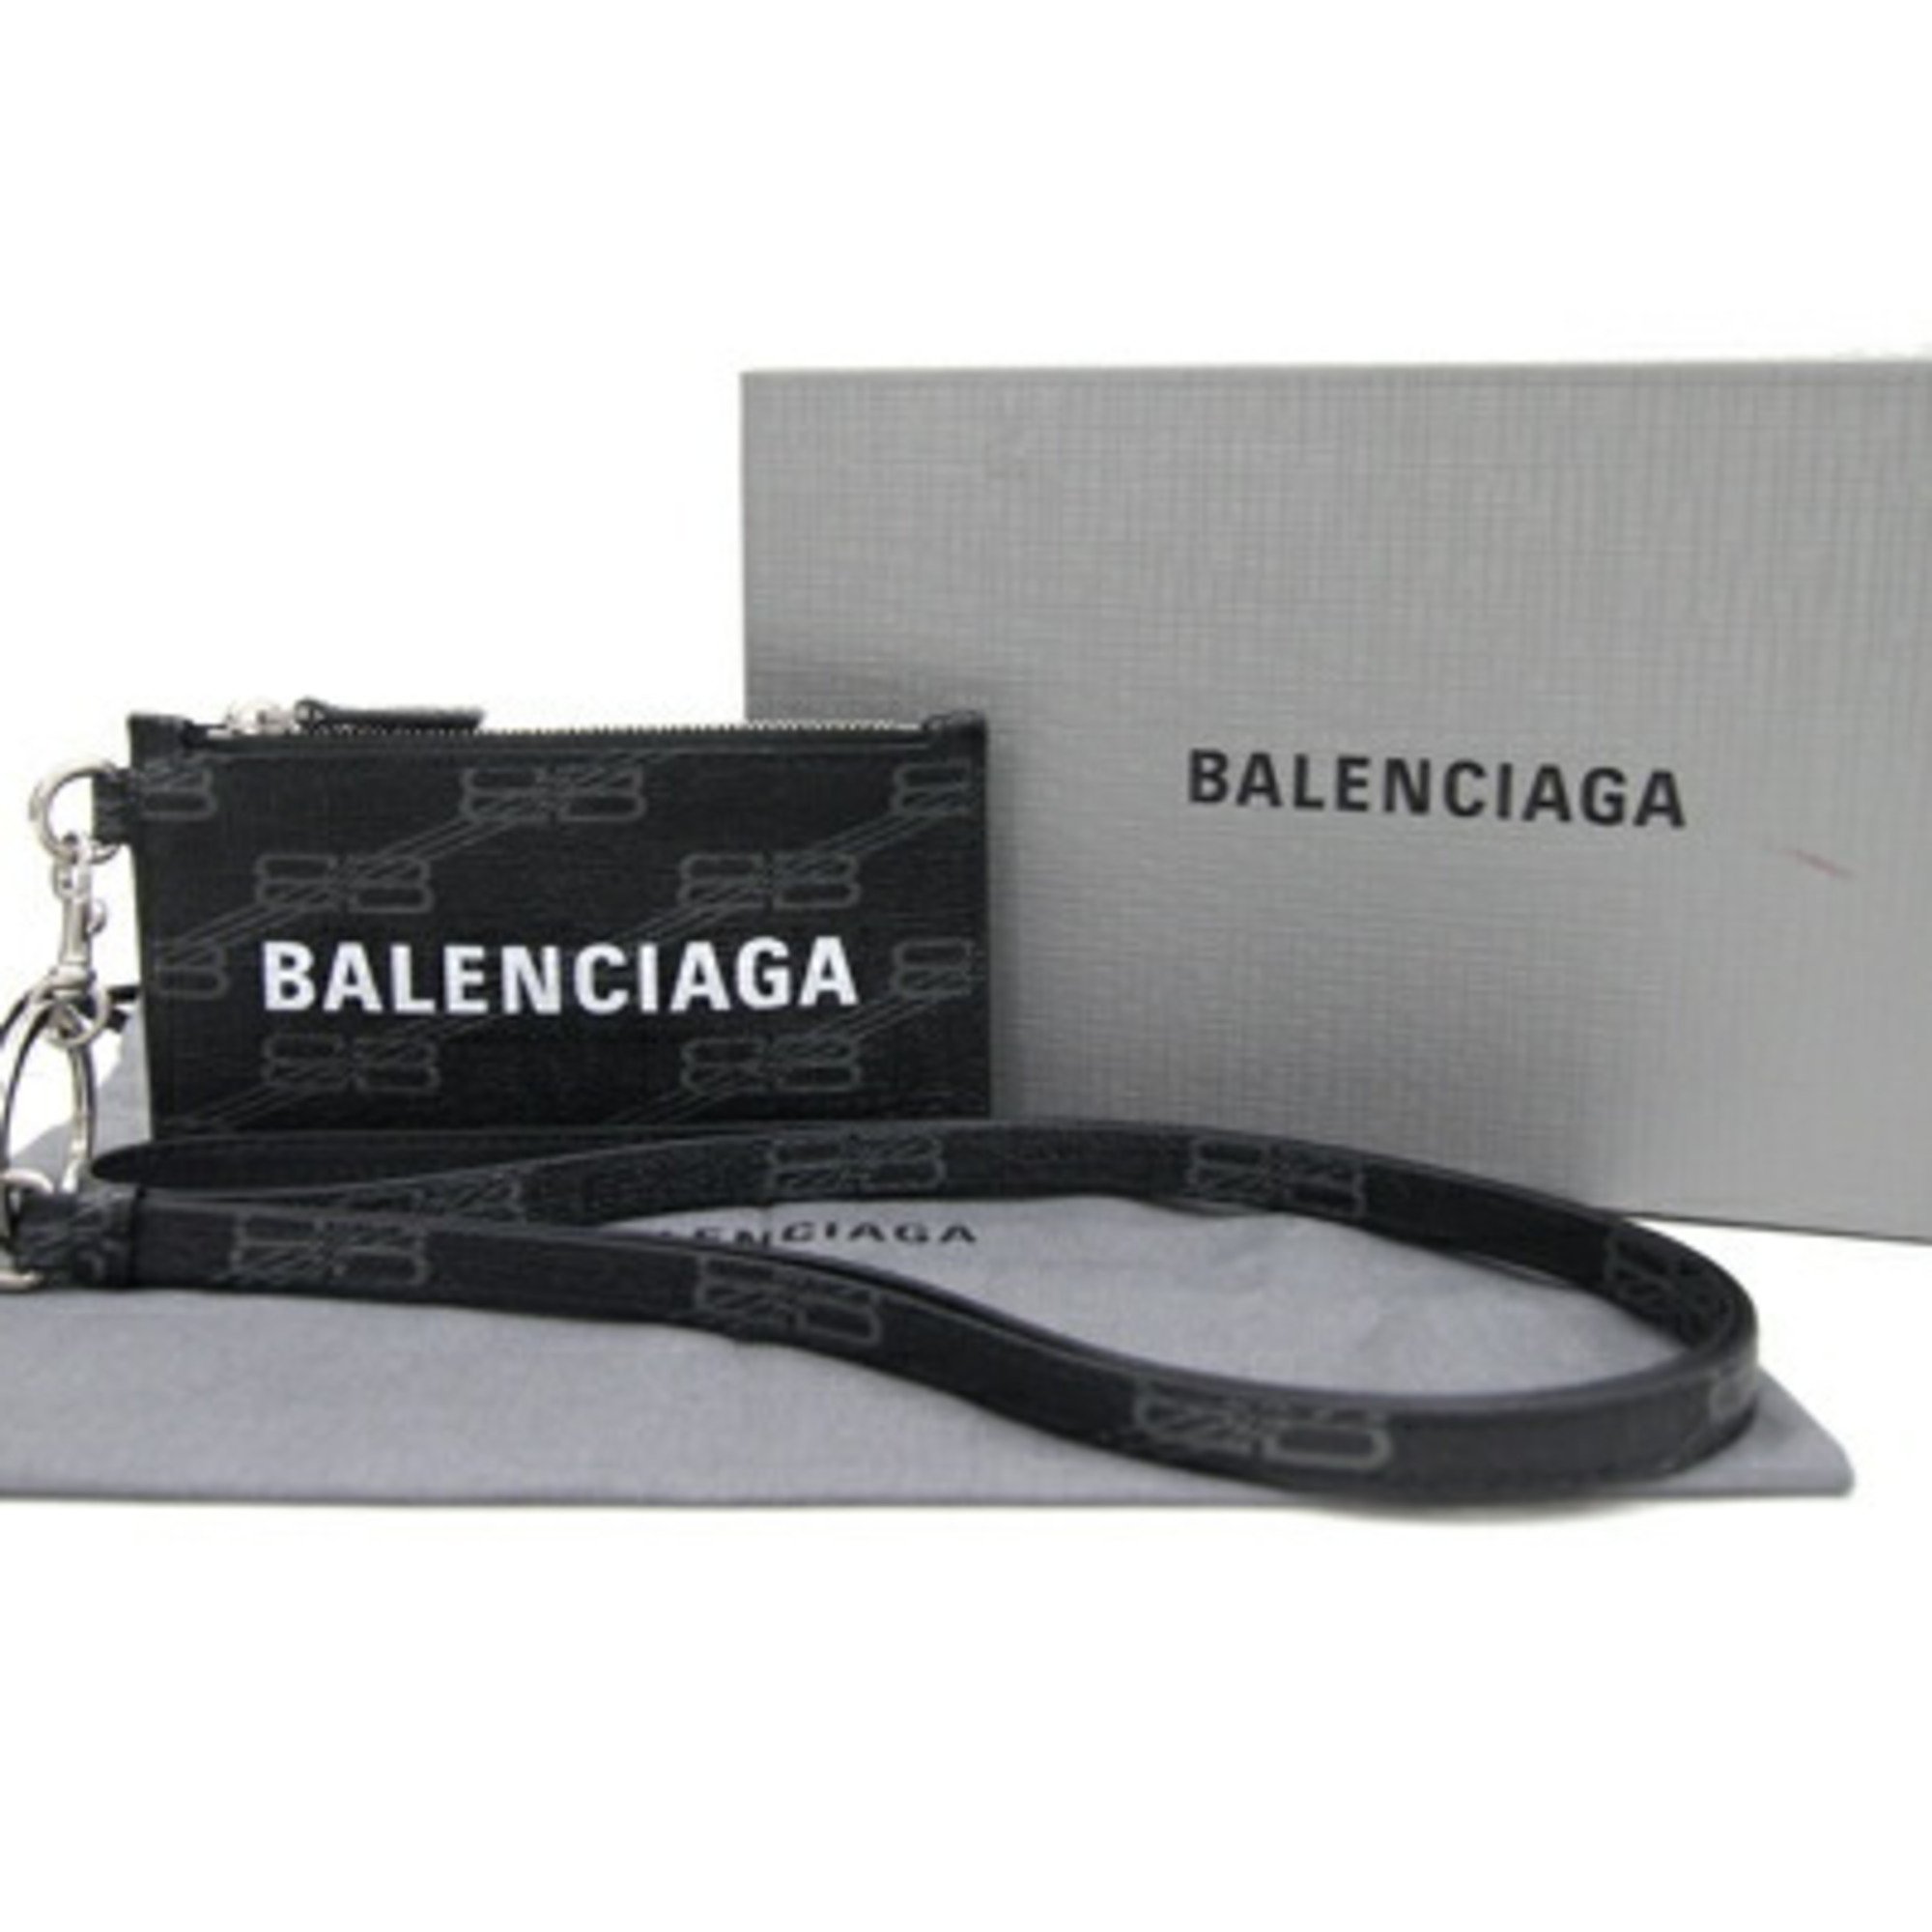 Balenciaga Card Key Ring 594548 Black Leather with Strap Fragment Case Men's Women's BALENCIAGA